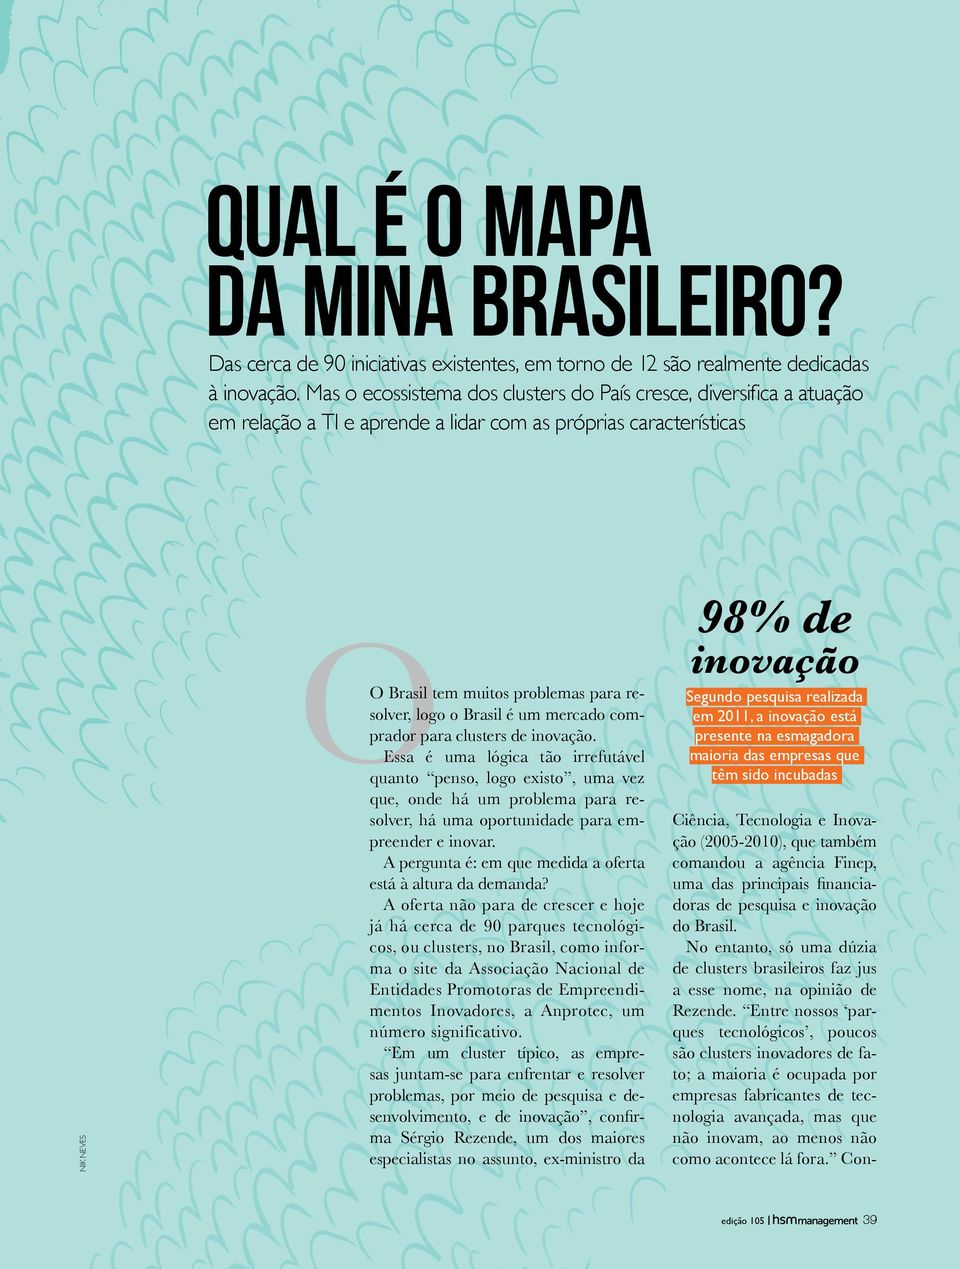 Brasil é um mercado comprador para clusters de inovação.